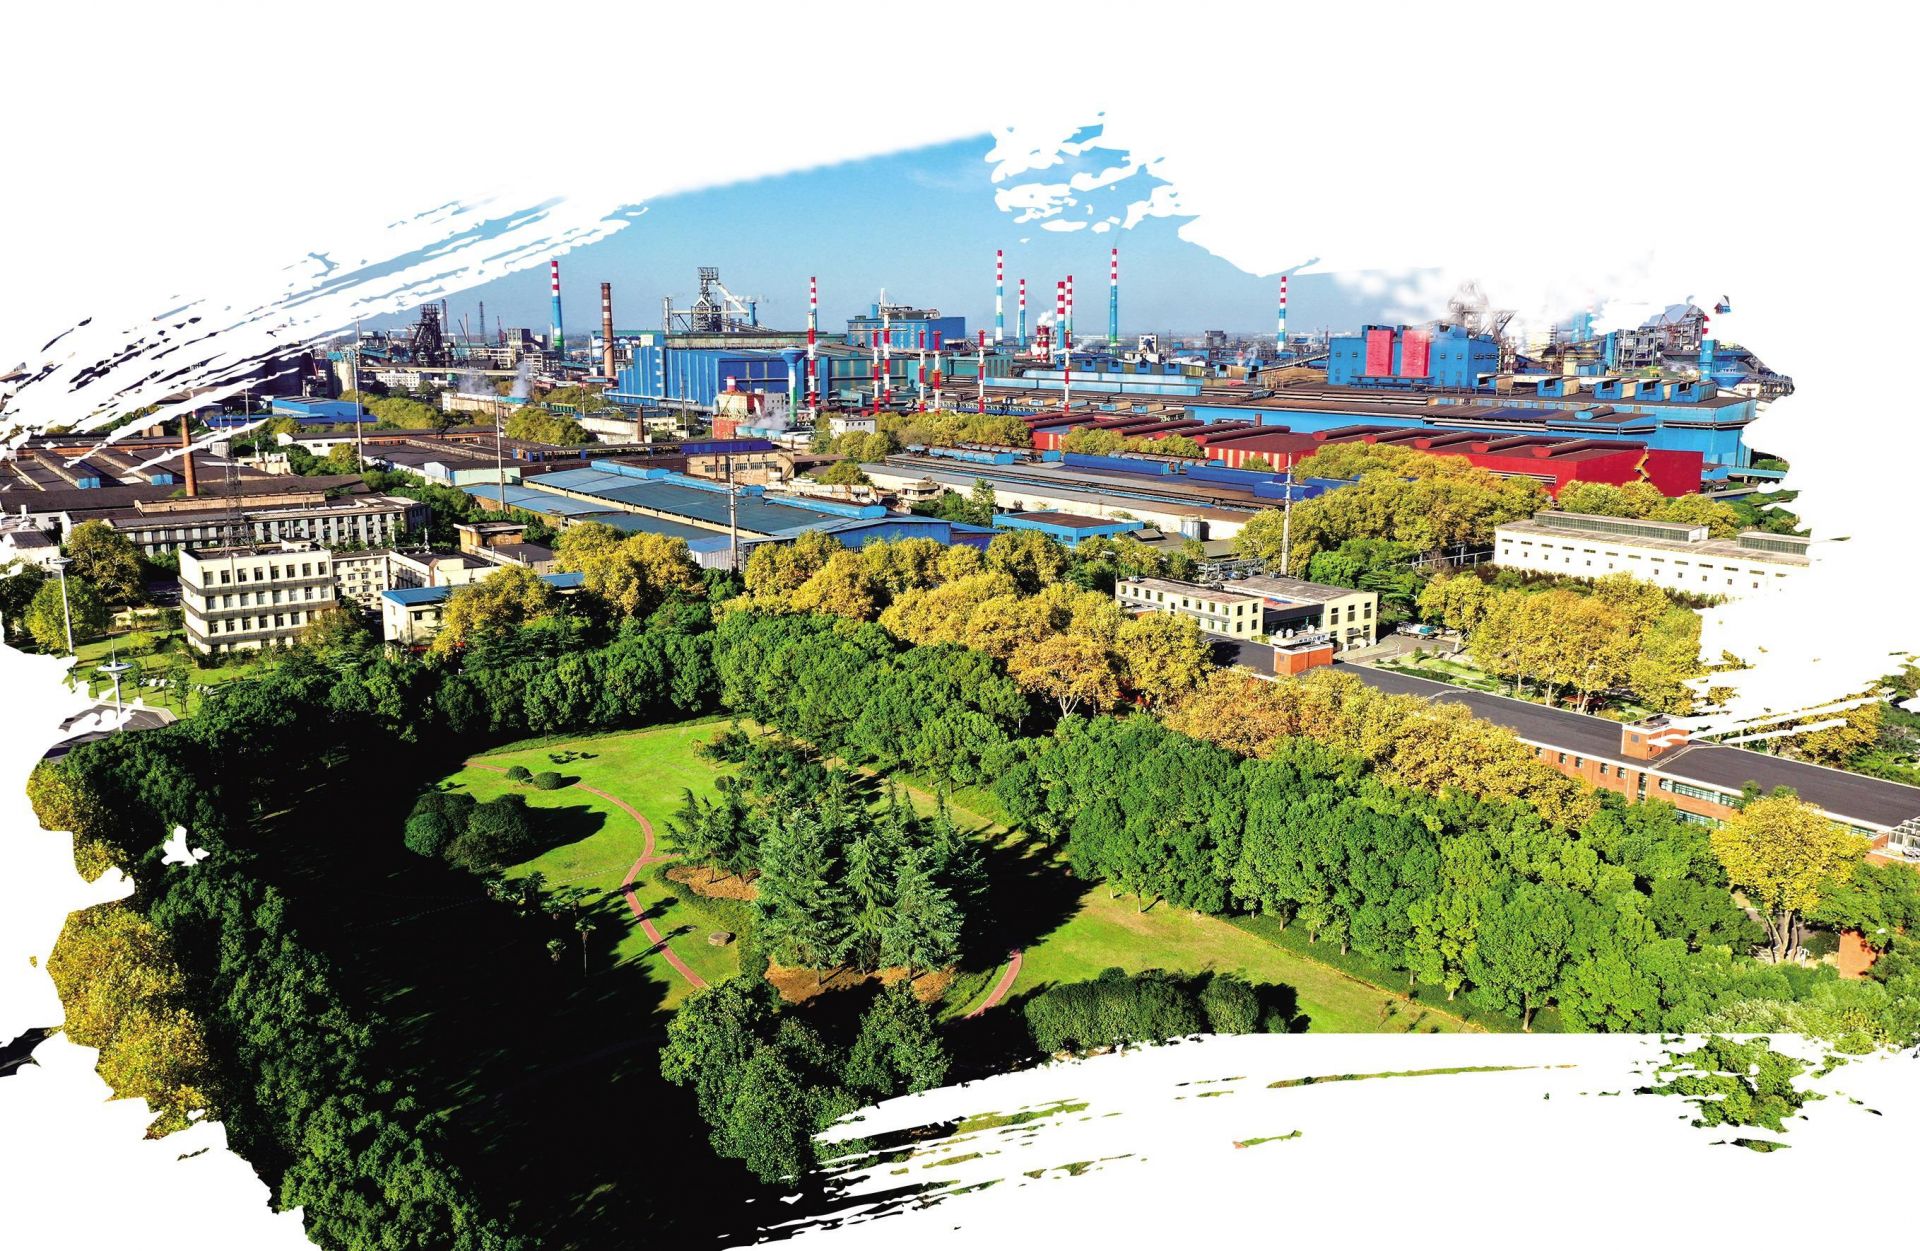 被称作森林钢厂的武钢厂区一览红尾伯劳池鹭位于武汉市青山区的武钢